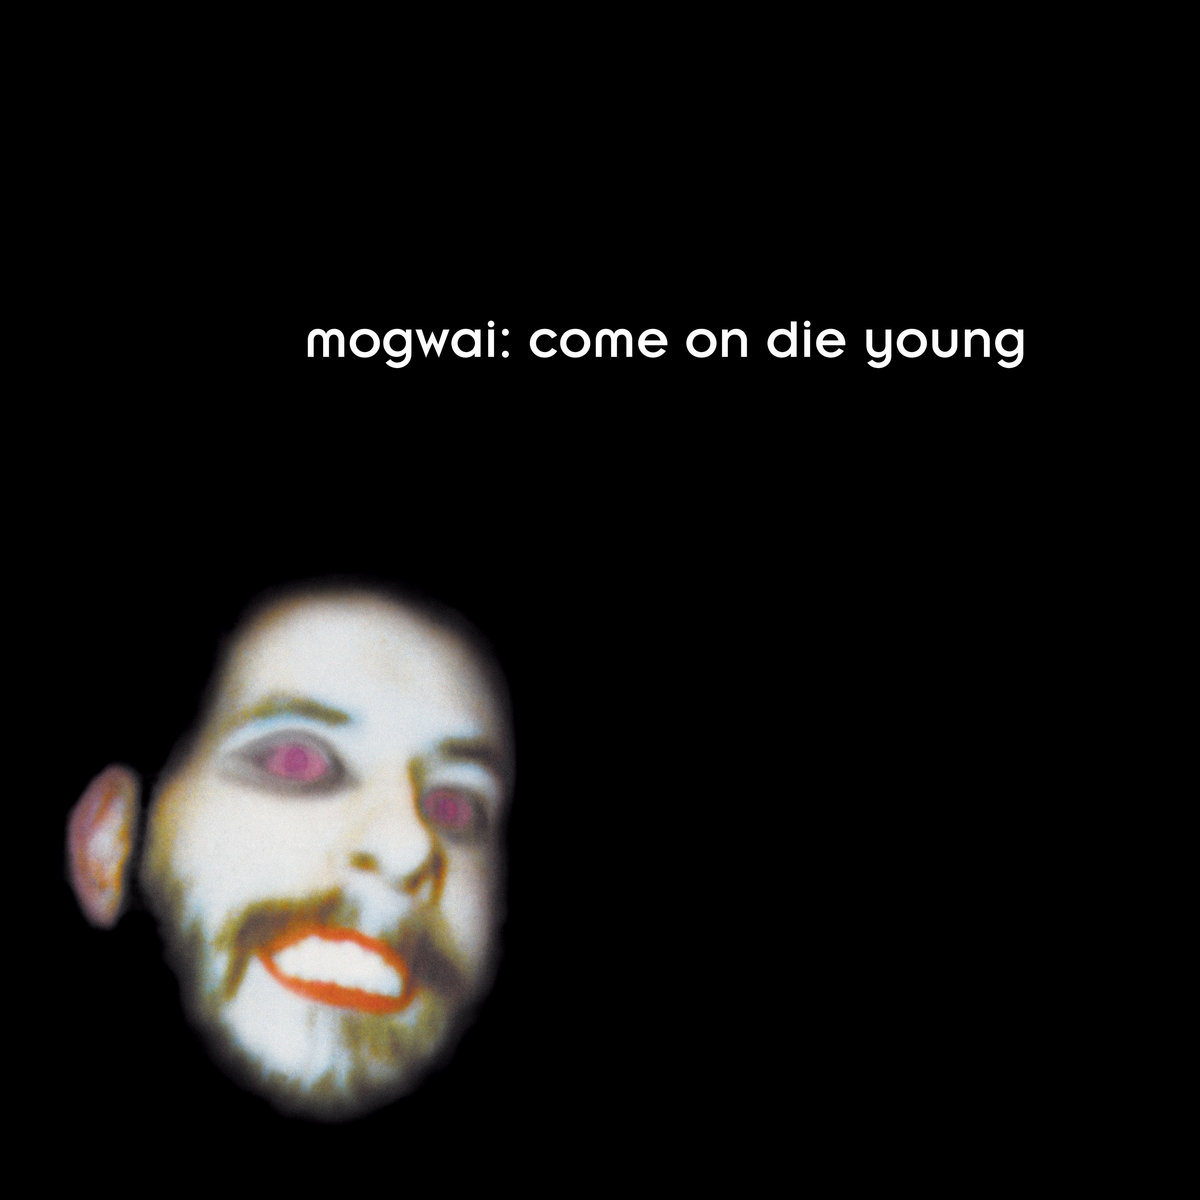 MOGWAI - COME ON DIE YOUNG (DOUBLE LP WHITE VINYLS) - LP